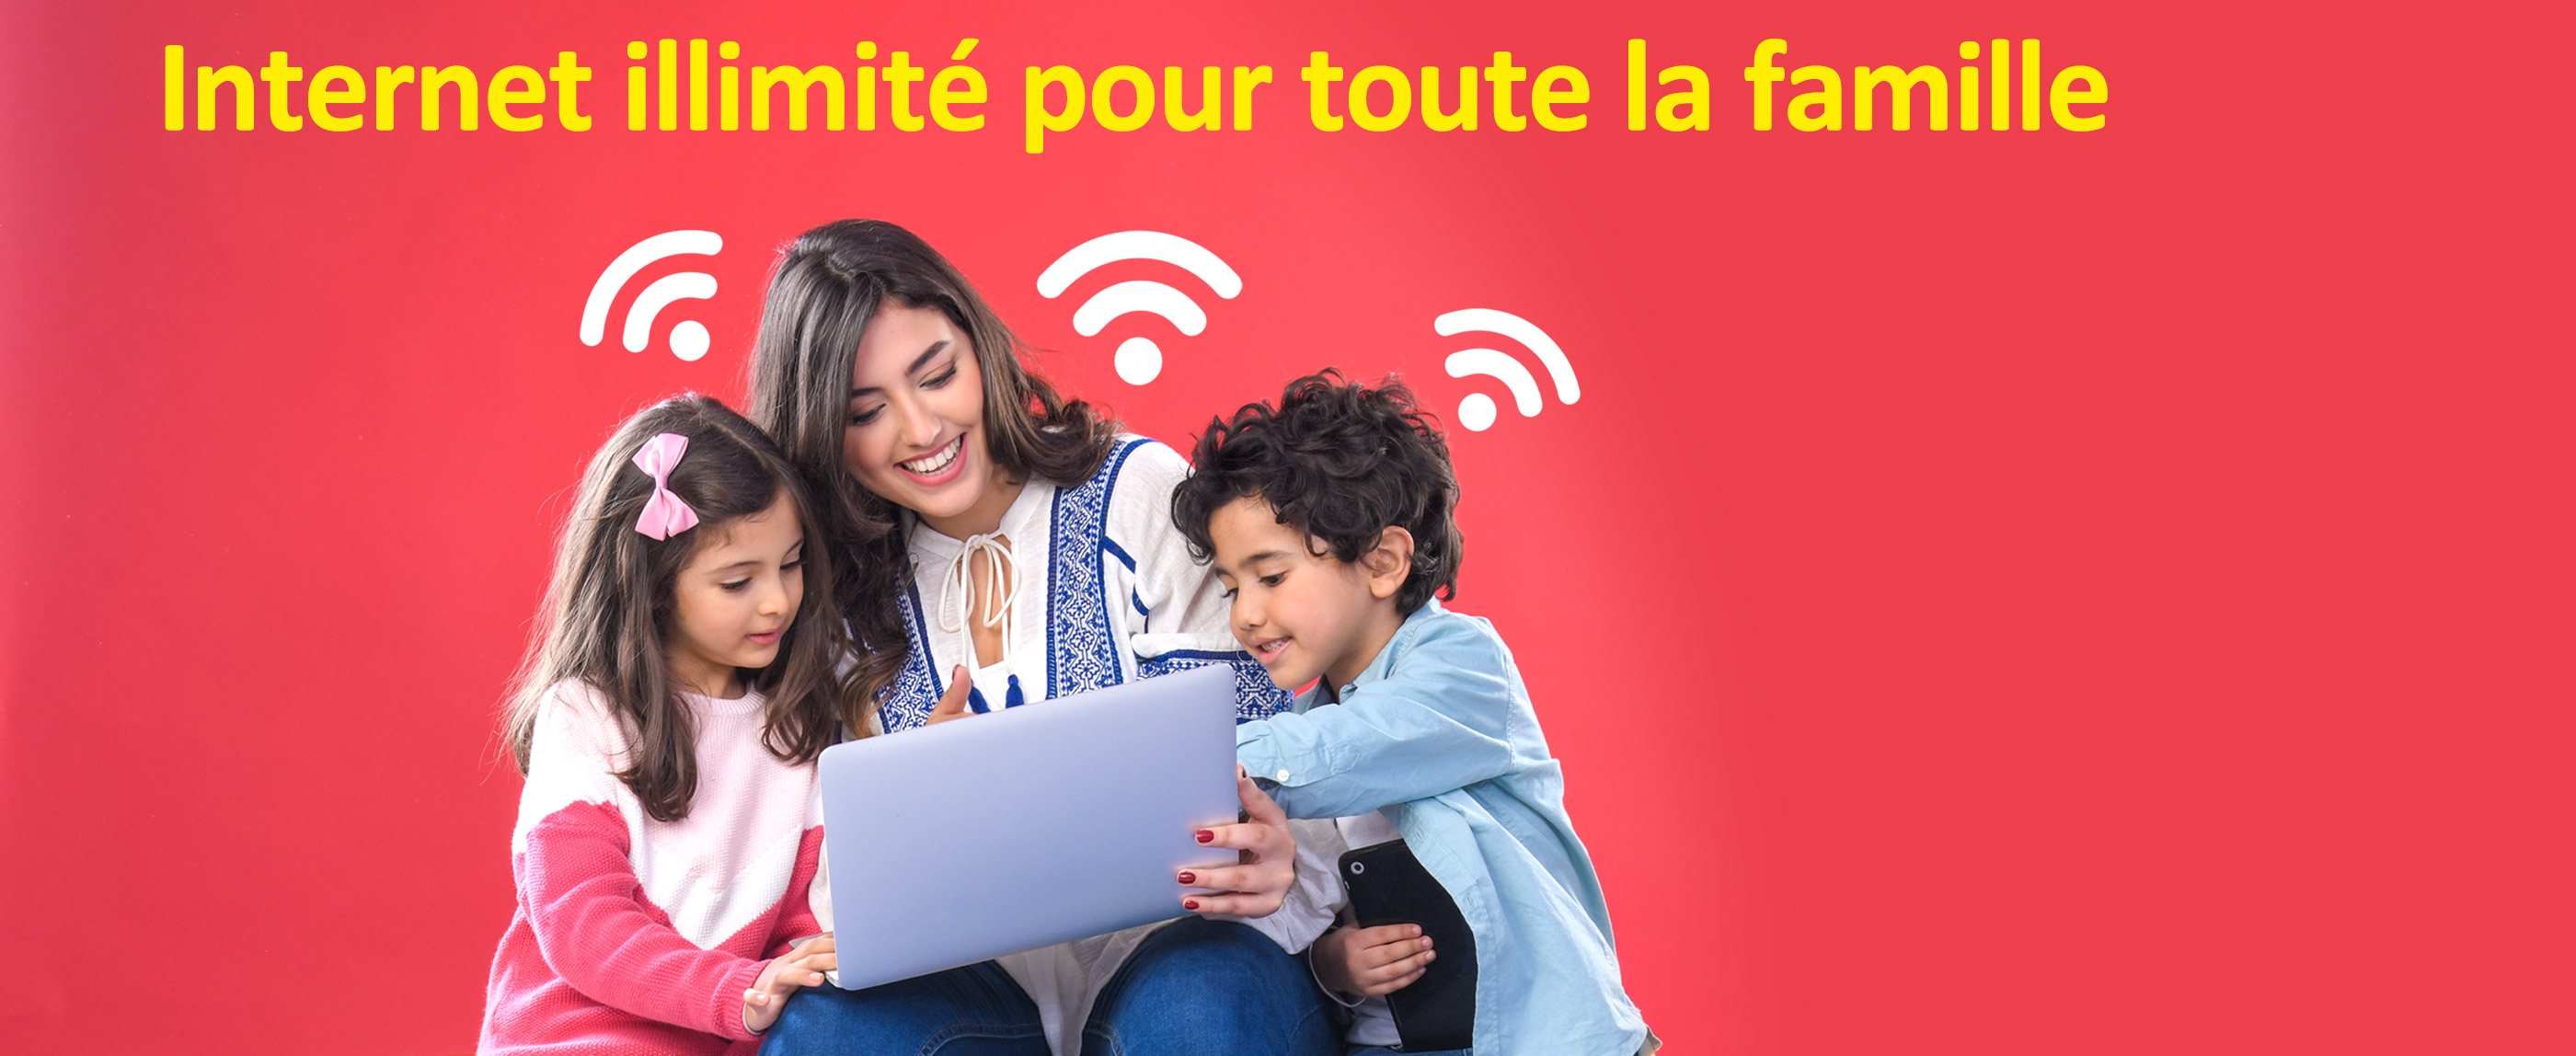 maroc telecom mt duo happy wifi